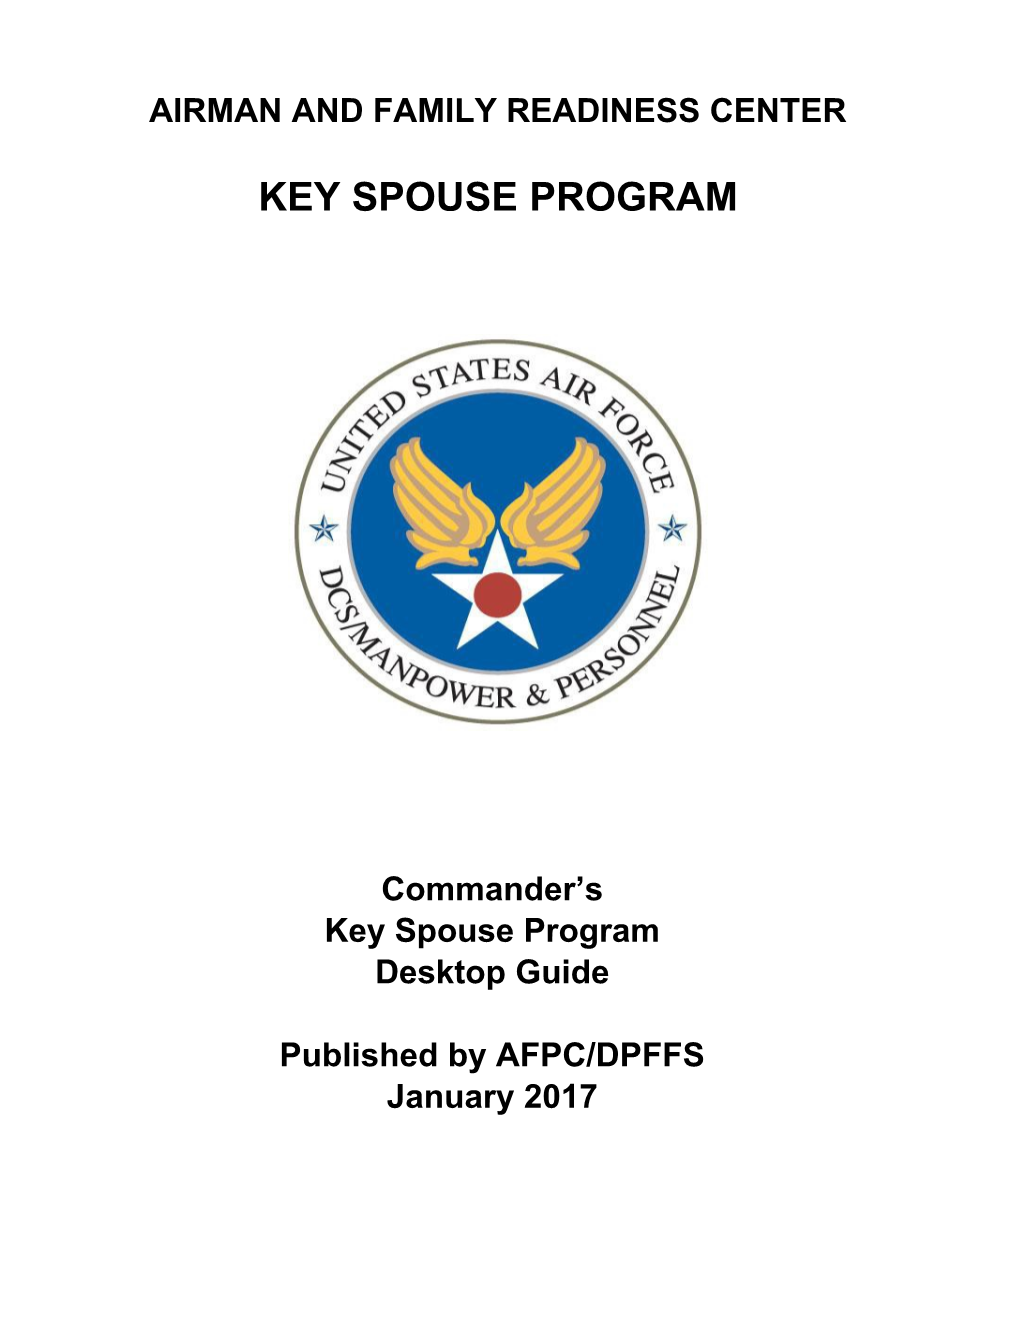 Key Spouse Program CC Key Spouse Desktop Guide